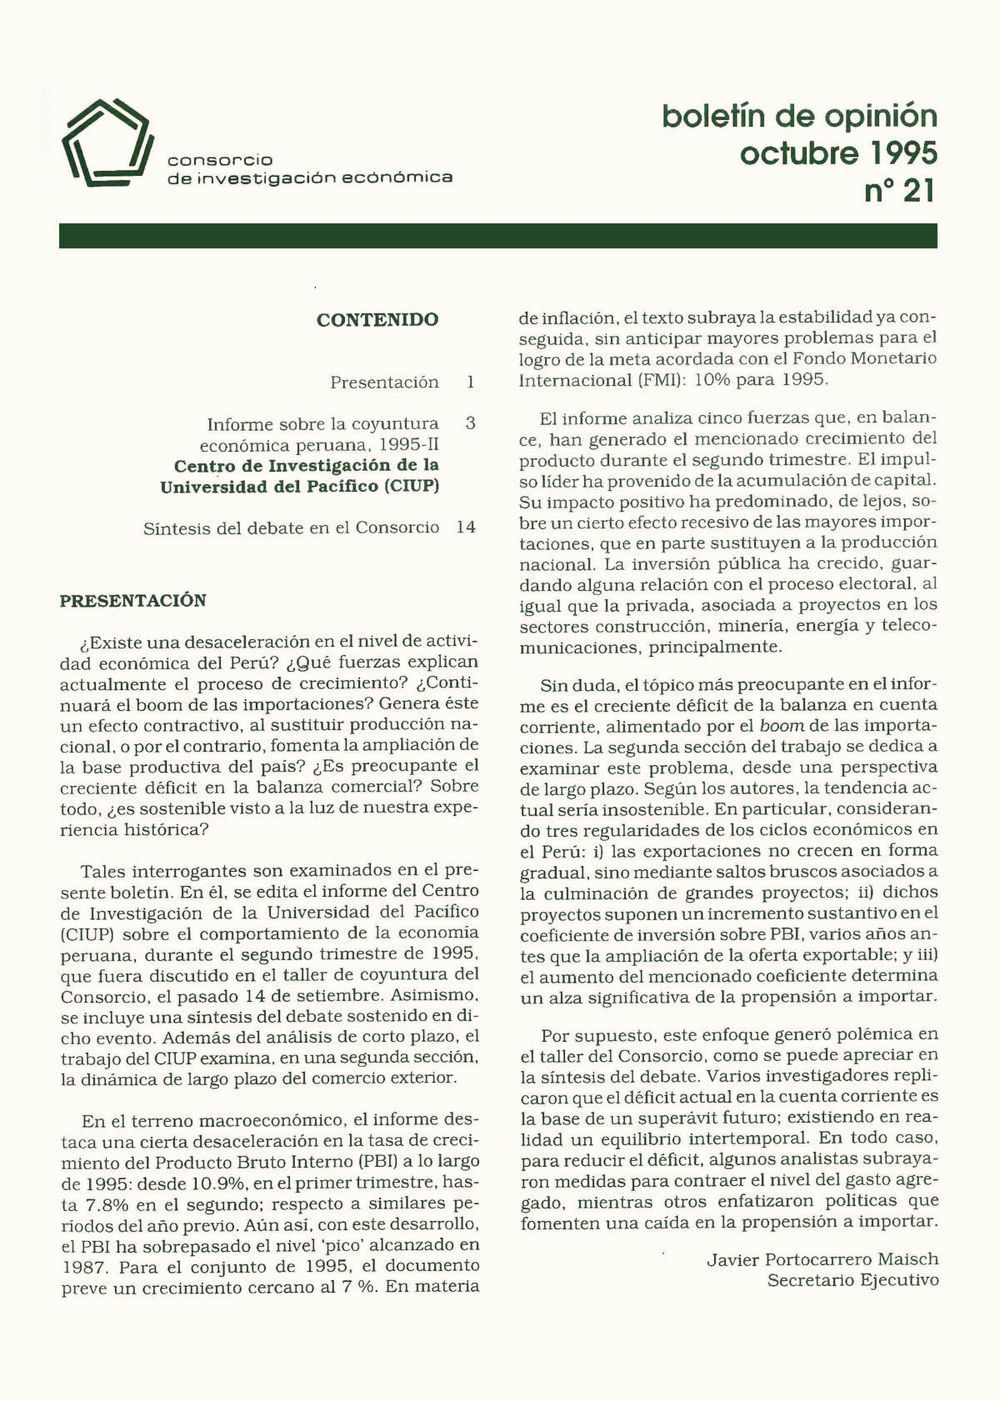 Boletín de opinión: Análisis de la economía peruana, 1995-II